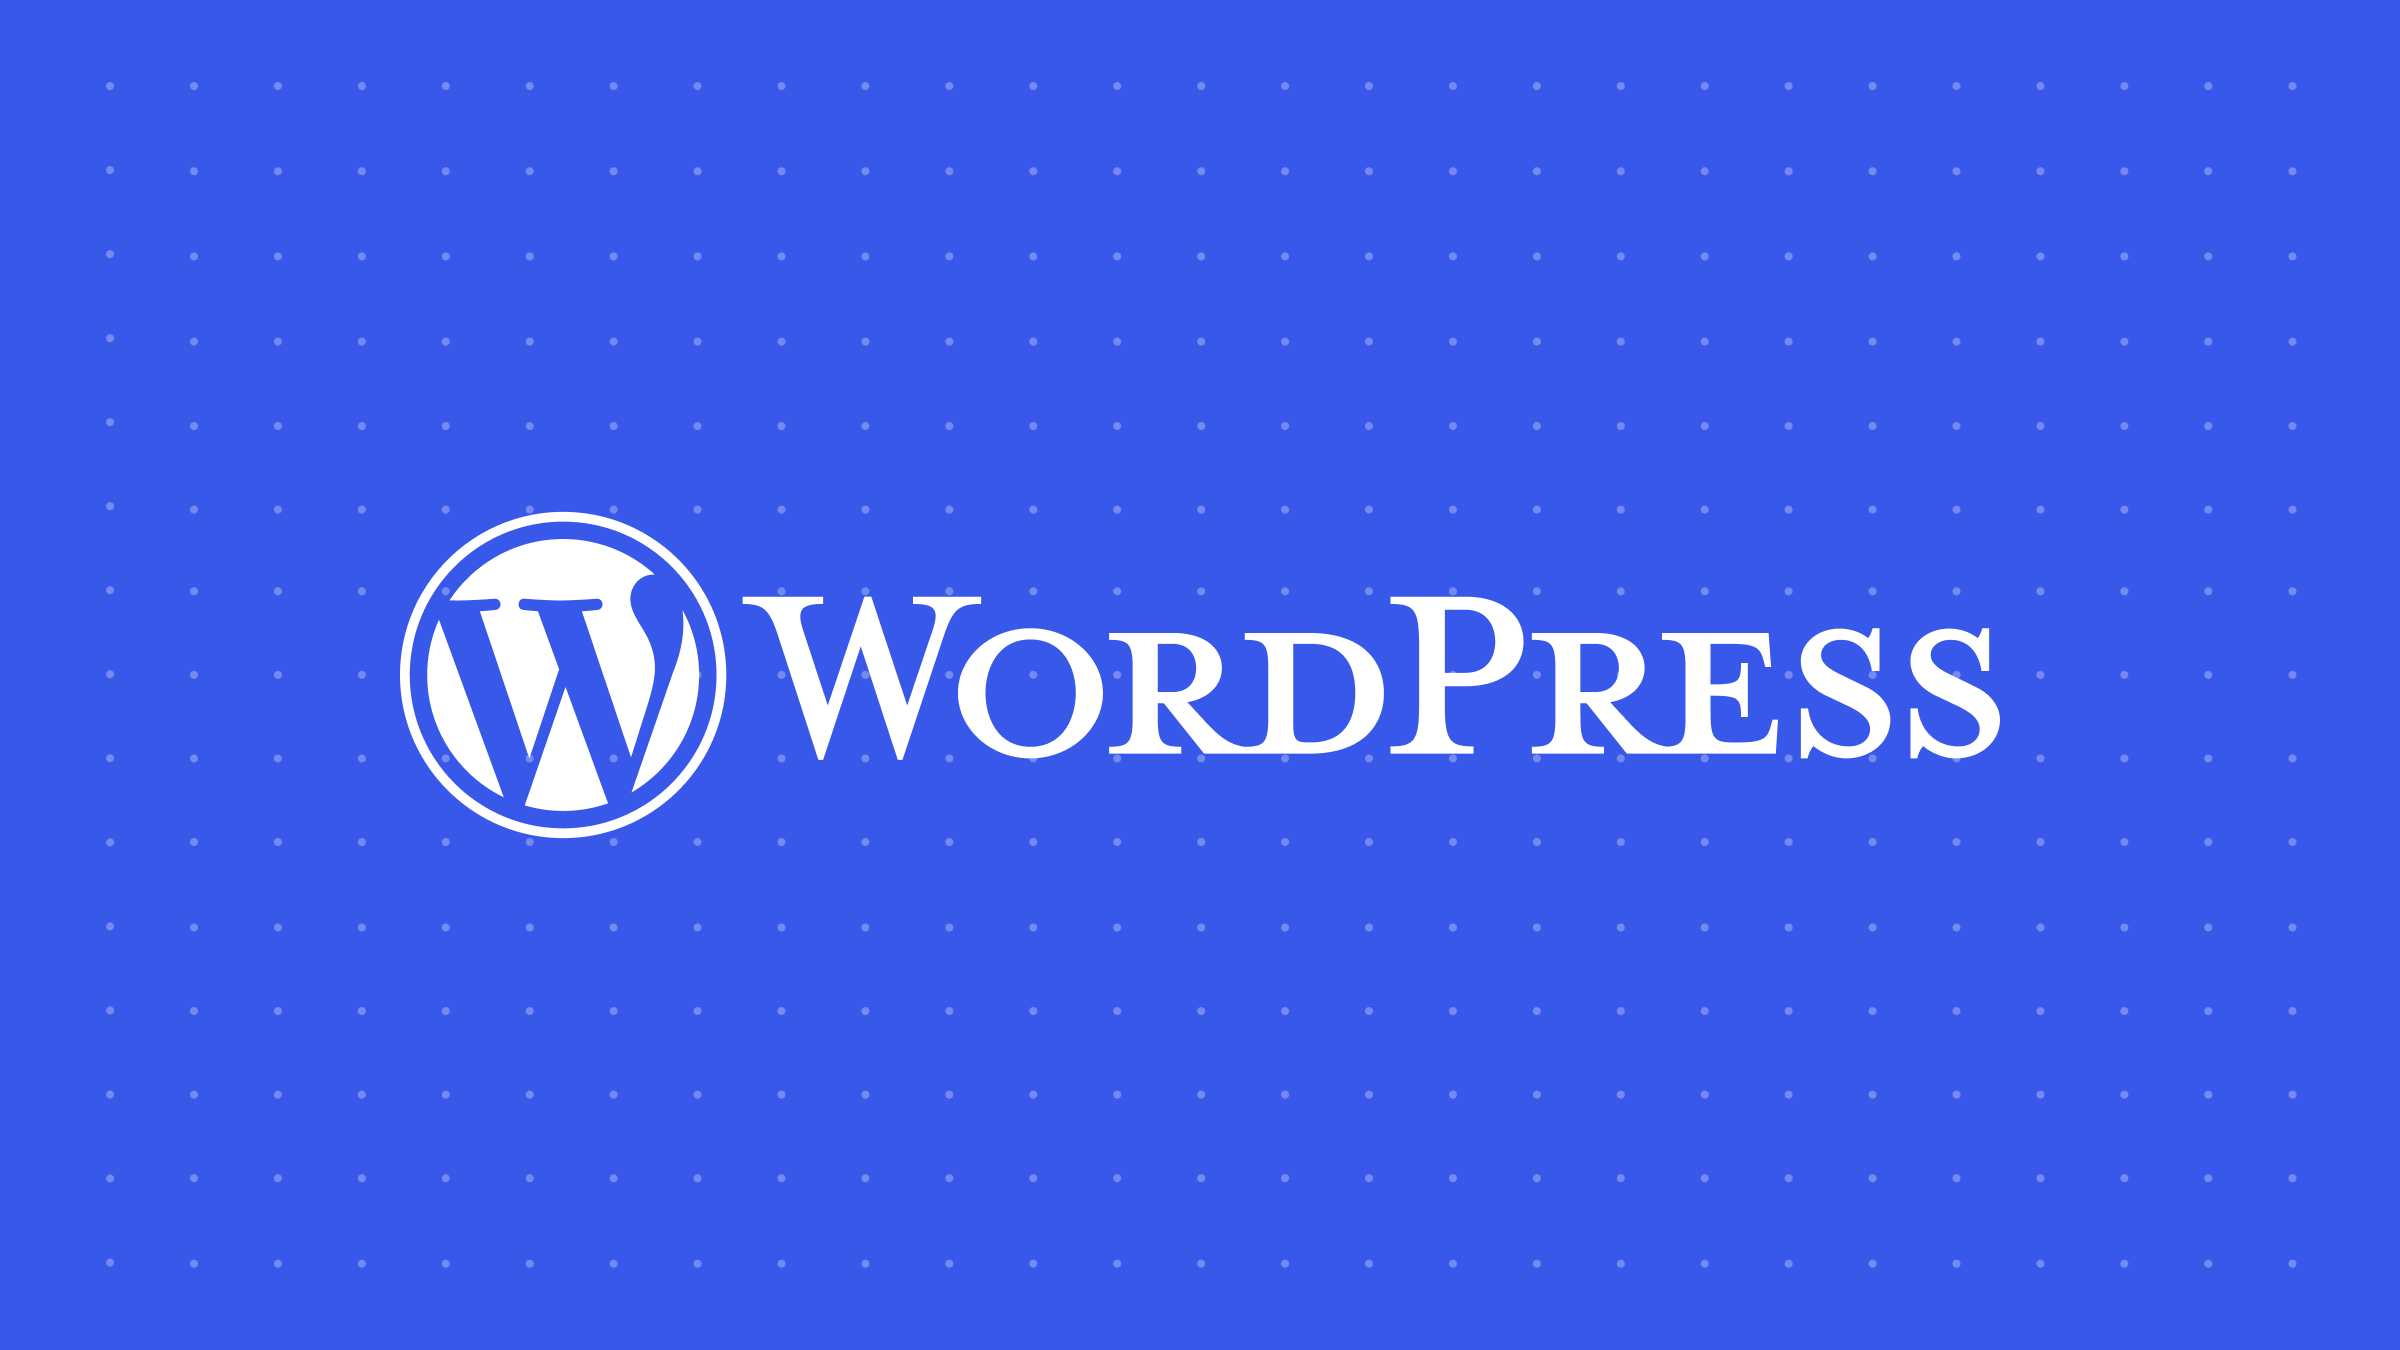 Dlaczego warto założyć korpus medialny WordPress (i dlaczego teraz?) – Wiadomości WordPress